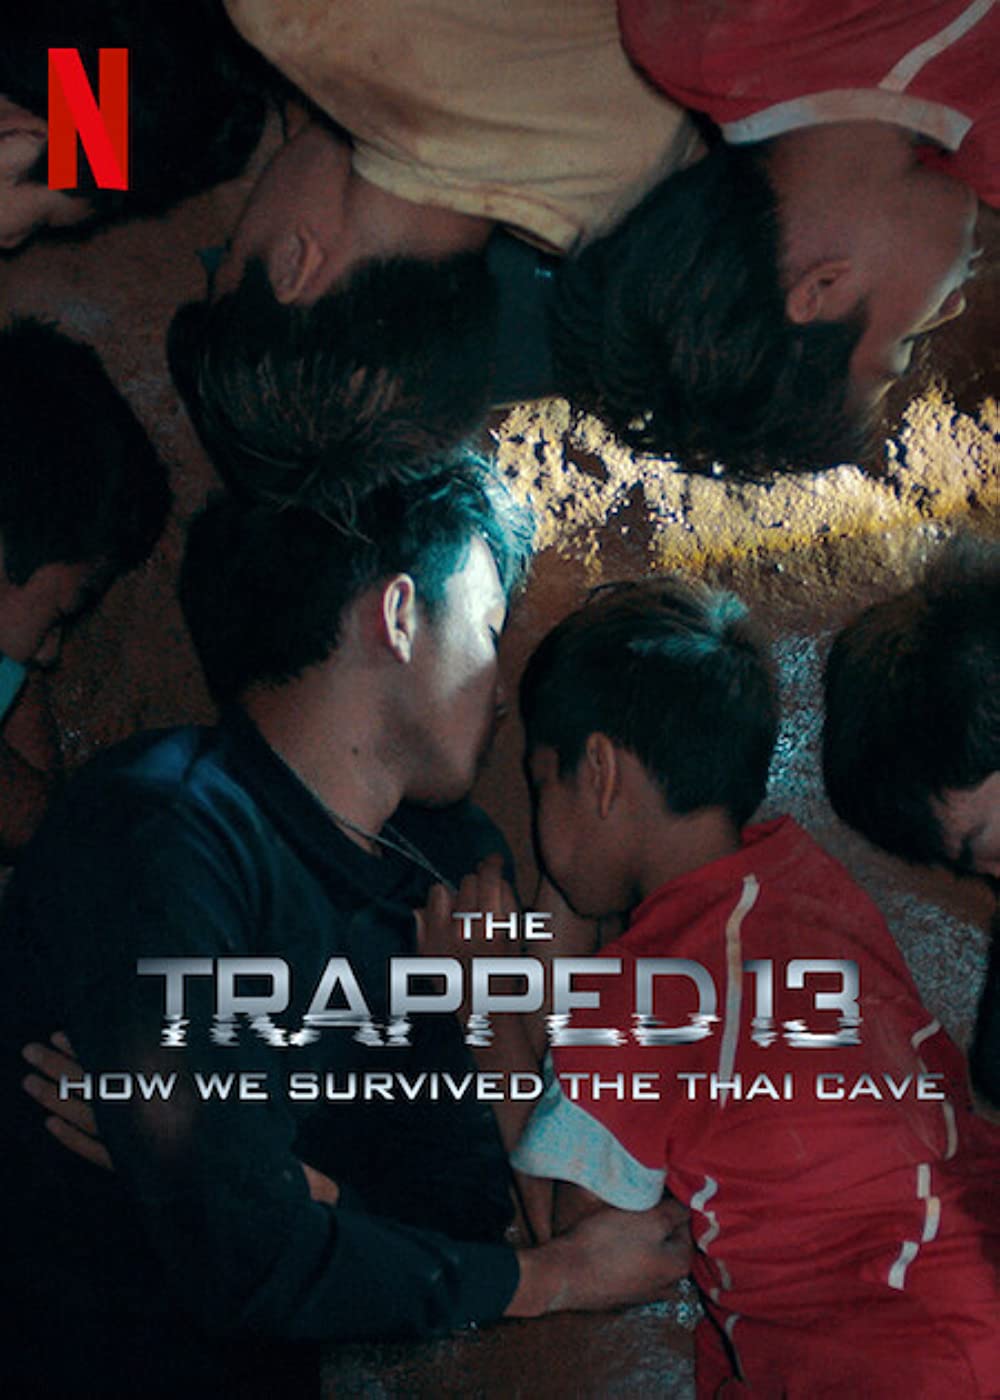 ดูหนังออนไลน์ The Trapped 13  How We Survived the Thai Cave 13 หมูป่า เรื่องเล่าจากในถ้ำ (2022) พากย์ไทย